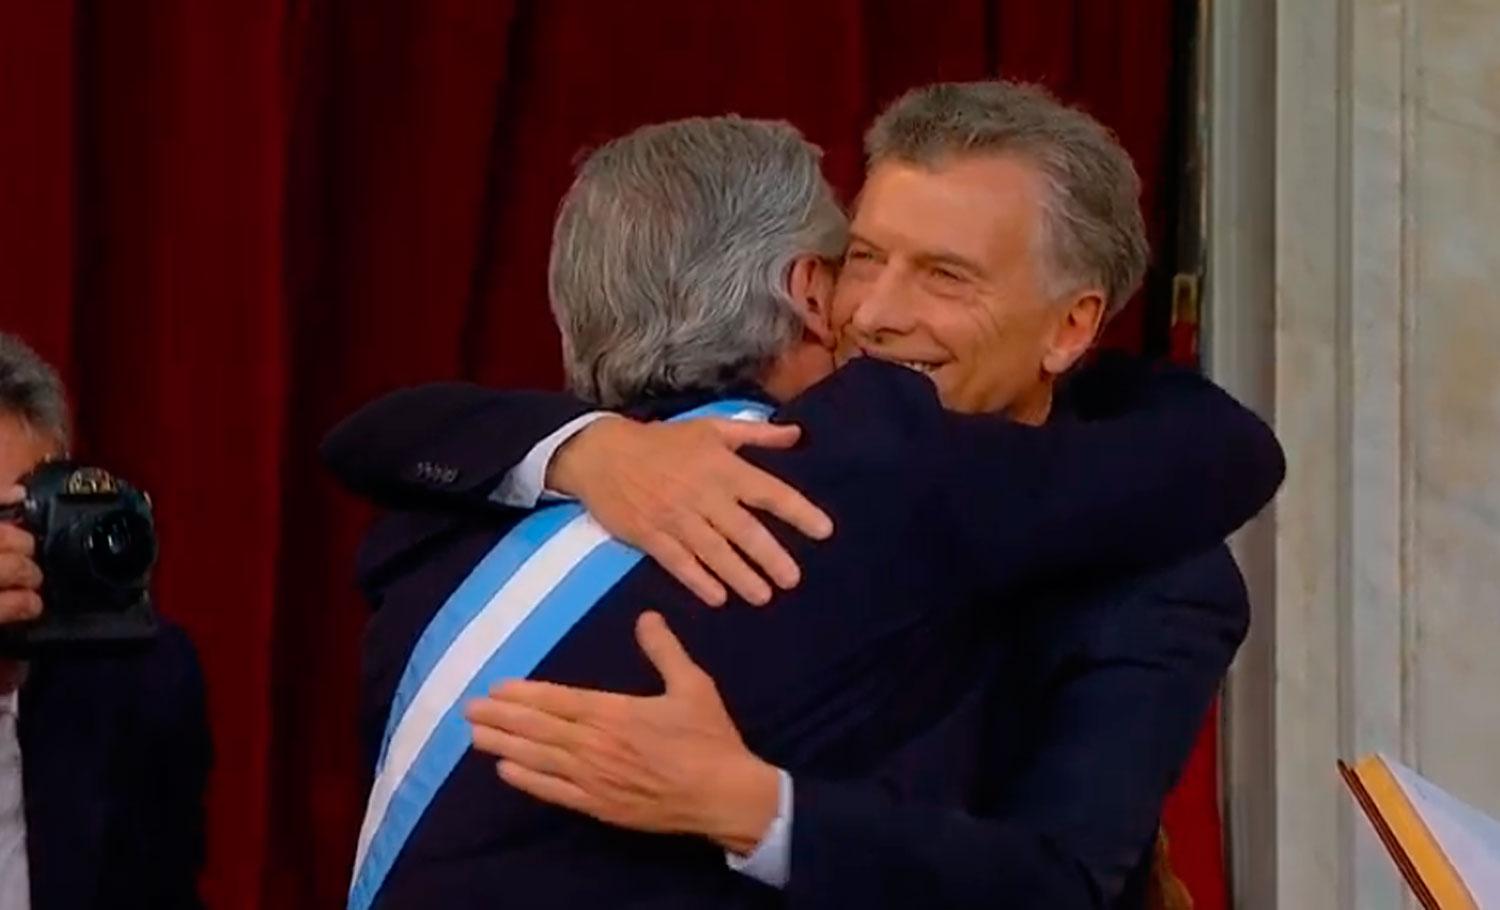 EL SALUDO. El abrazo entre Alberto y Macri luego del traspaso de mando.